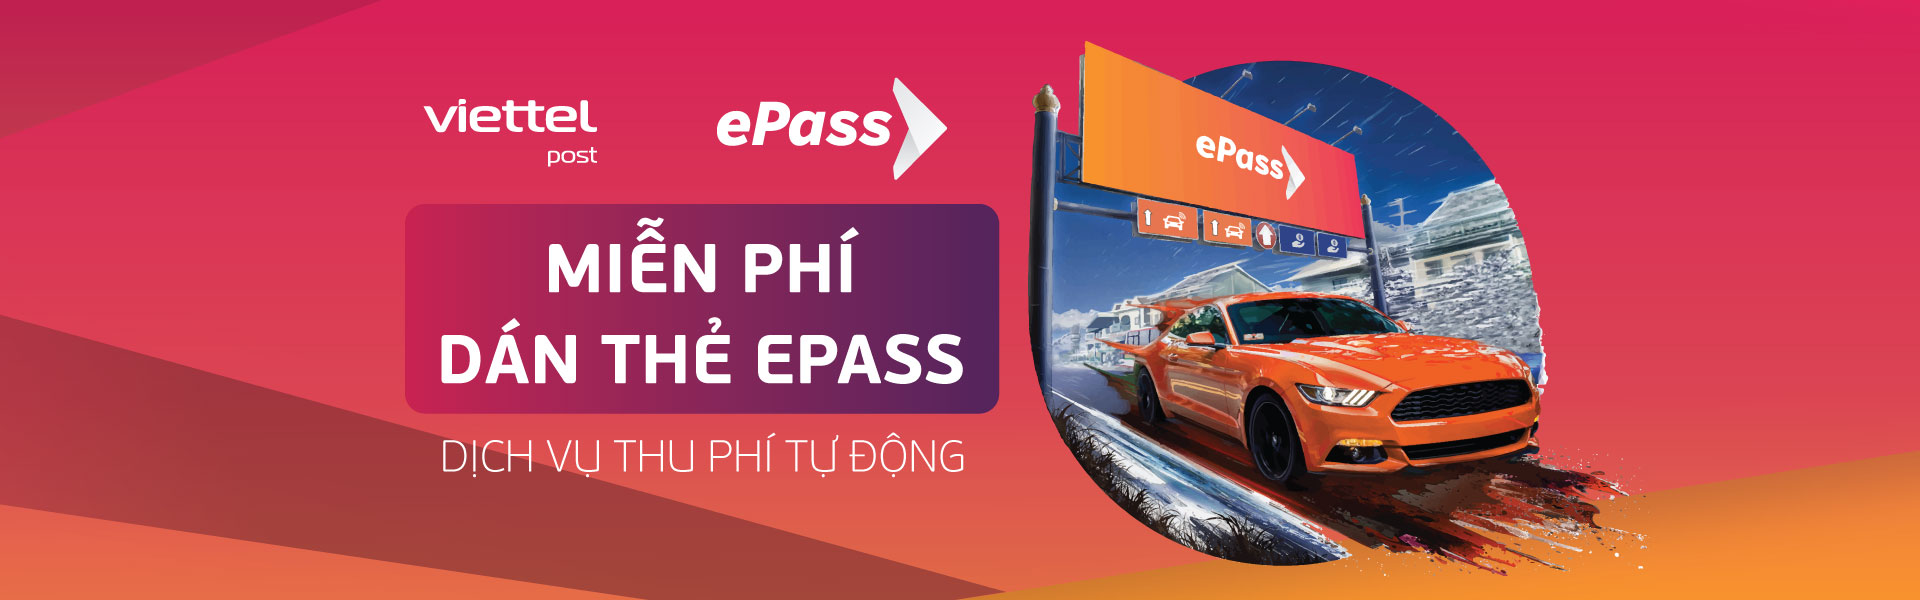 ePass Viettel Quảng Ngãi